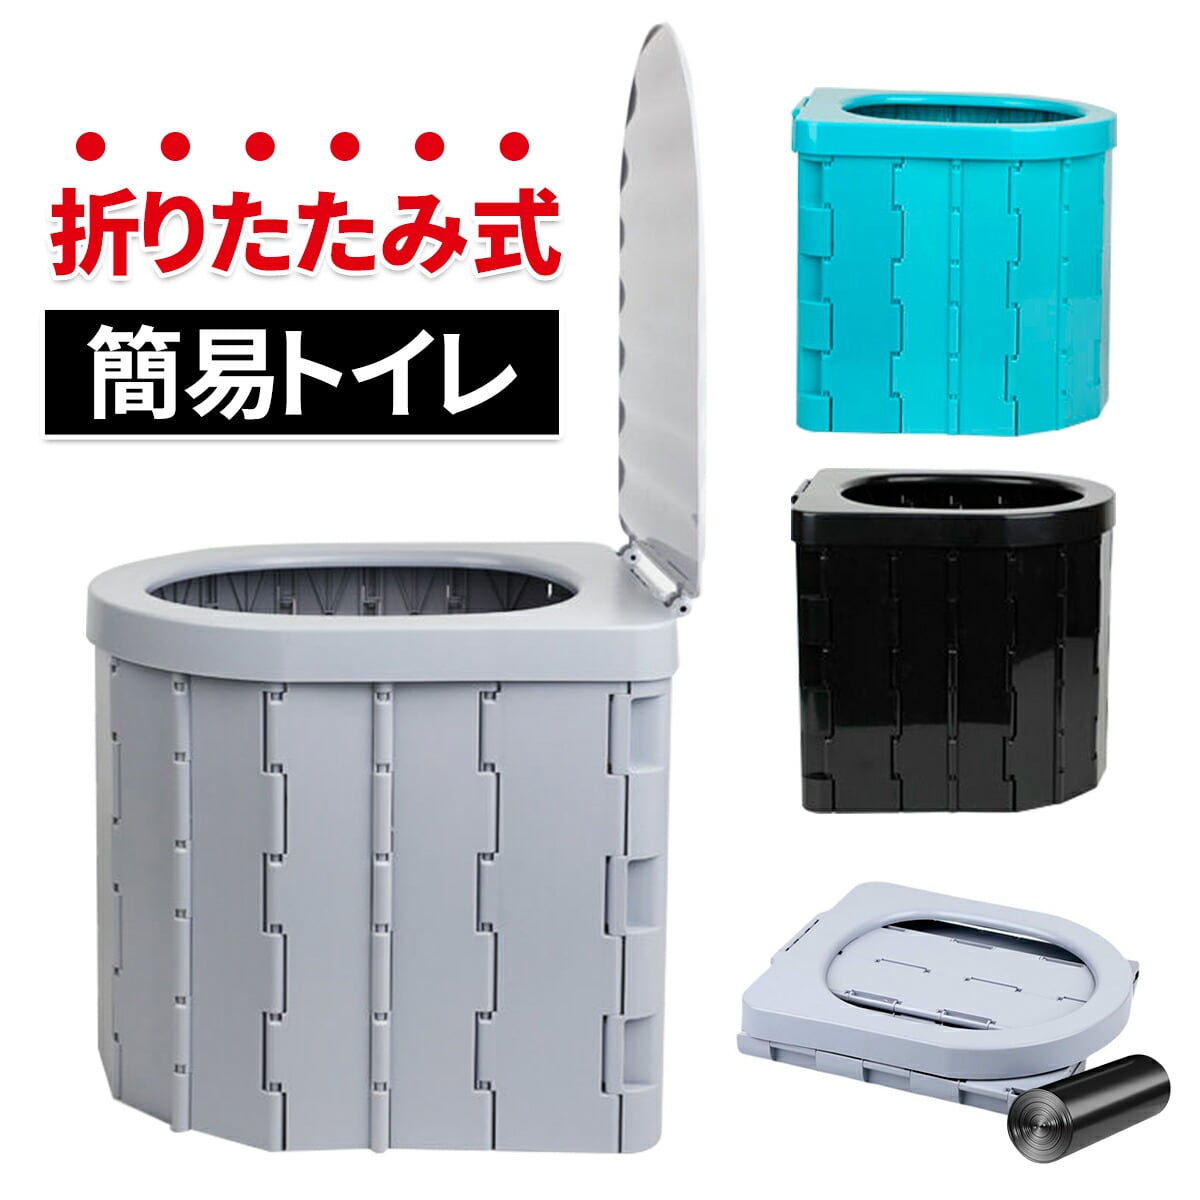 最新版 ポータブルトイレ 折り畳み 排泄処理袋付き 簡易トイレ 防災